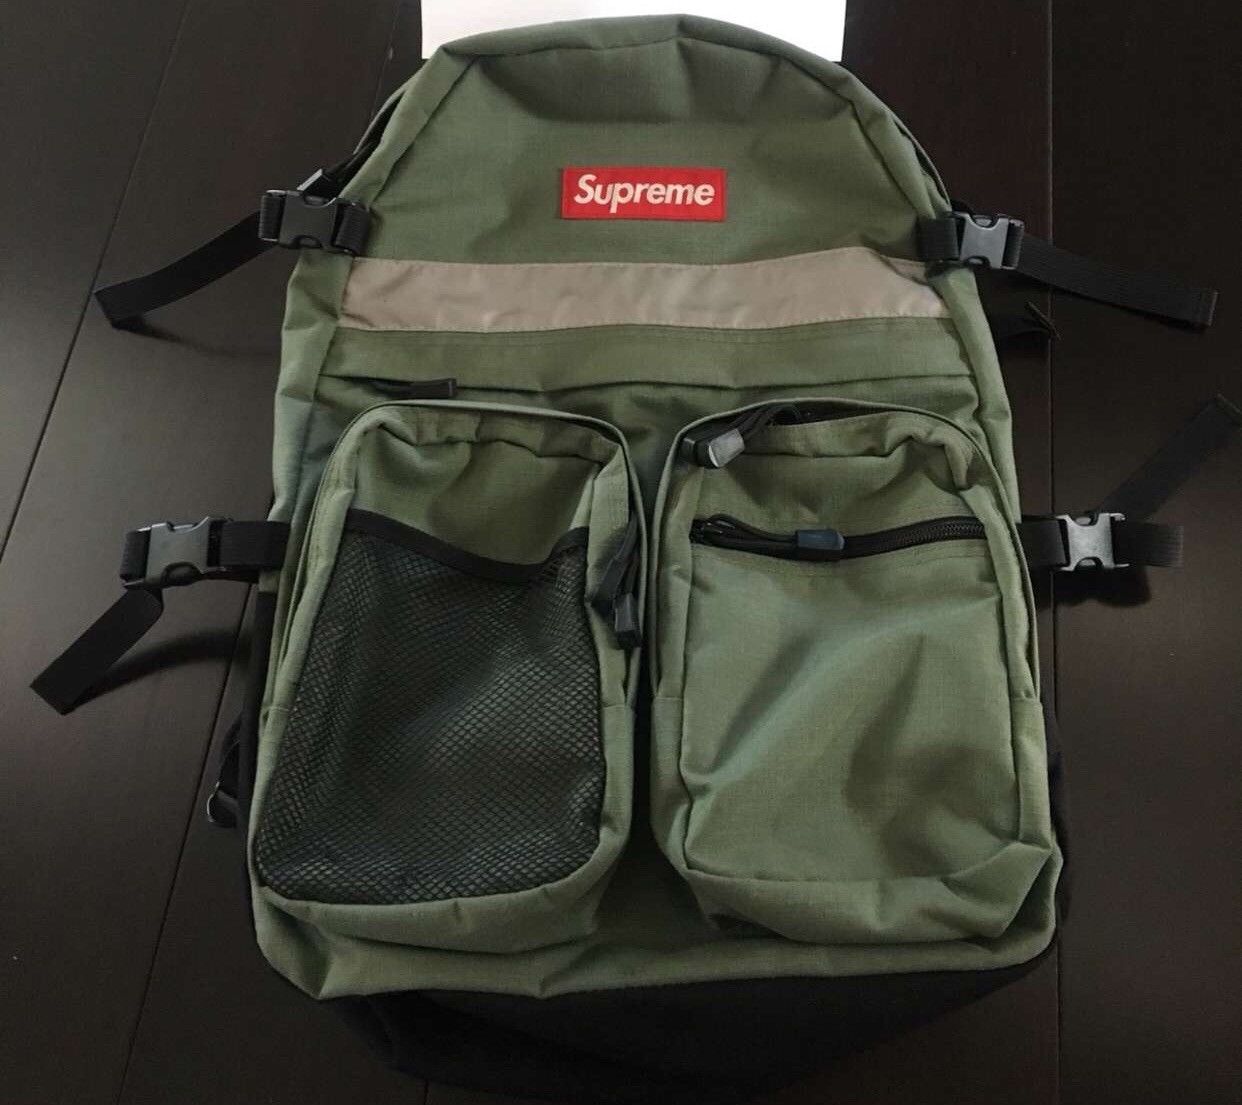 Supreme Supreme Backpack Hi Vis Gunmetal Green FW 2014 VNDS | Grailed